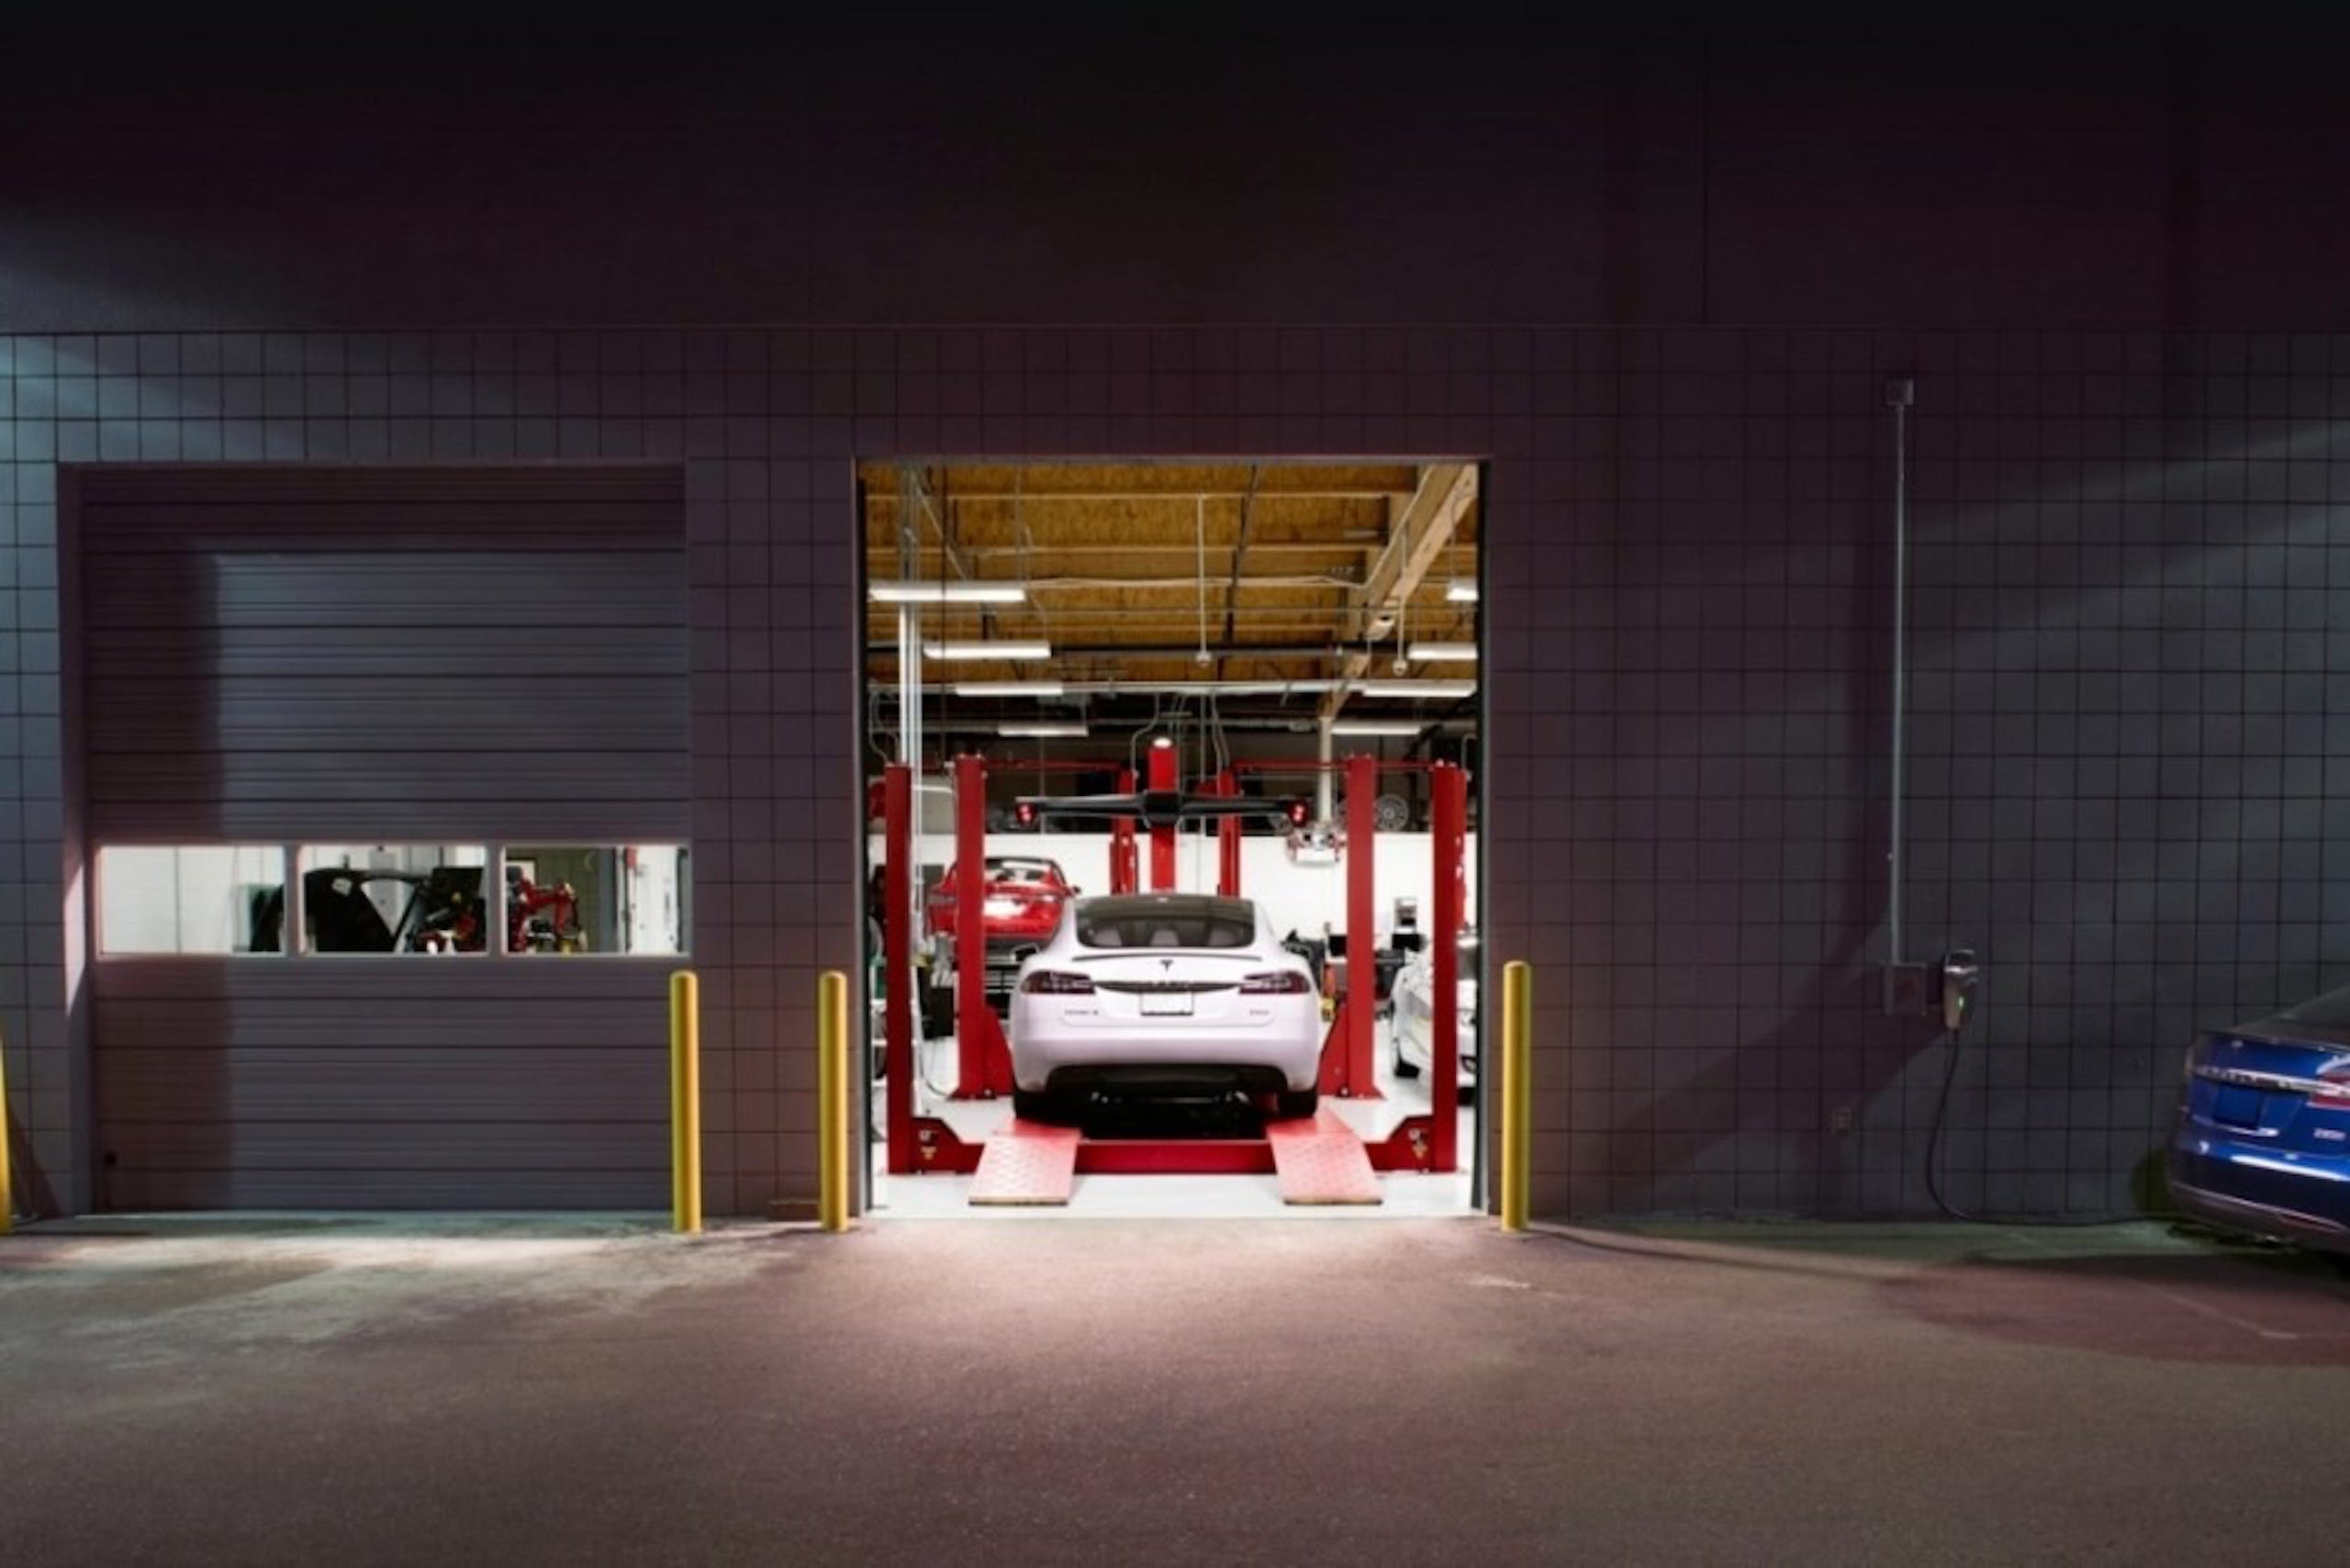 馬斯克表示 Tesla 車輛維修服務導入F1維修站技術 1 小時內完成模組化設計零件交換